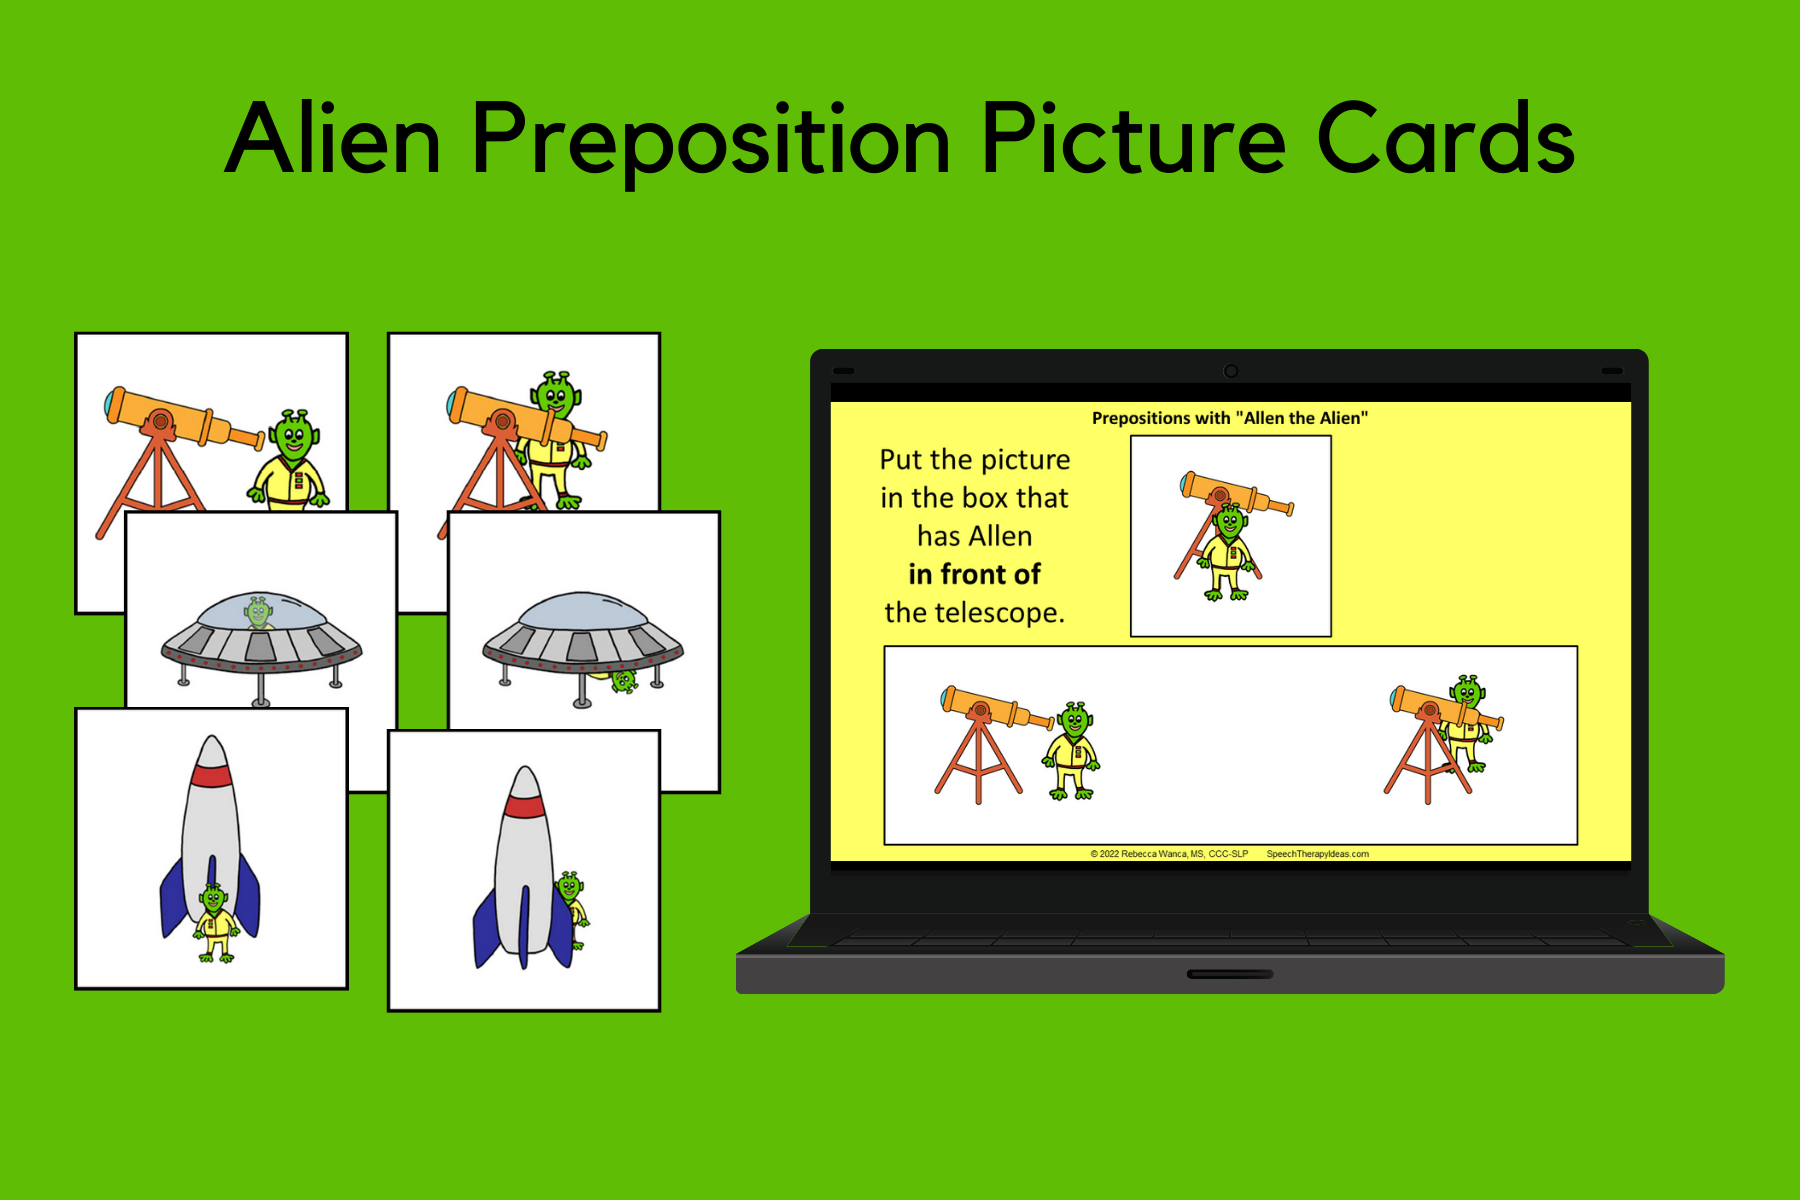 Alien Preposition Picture Cards